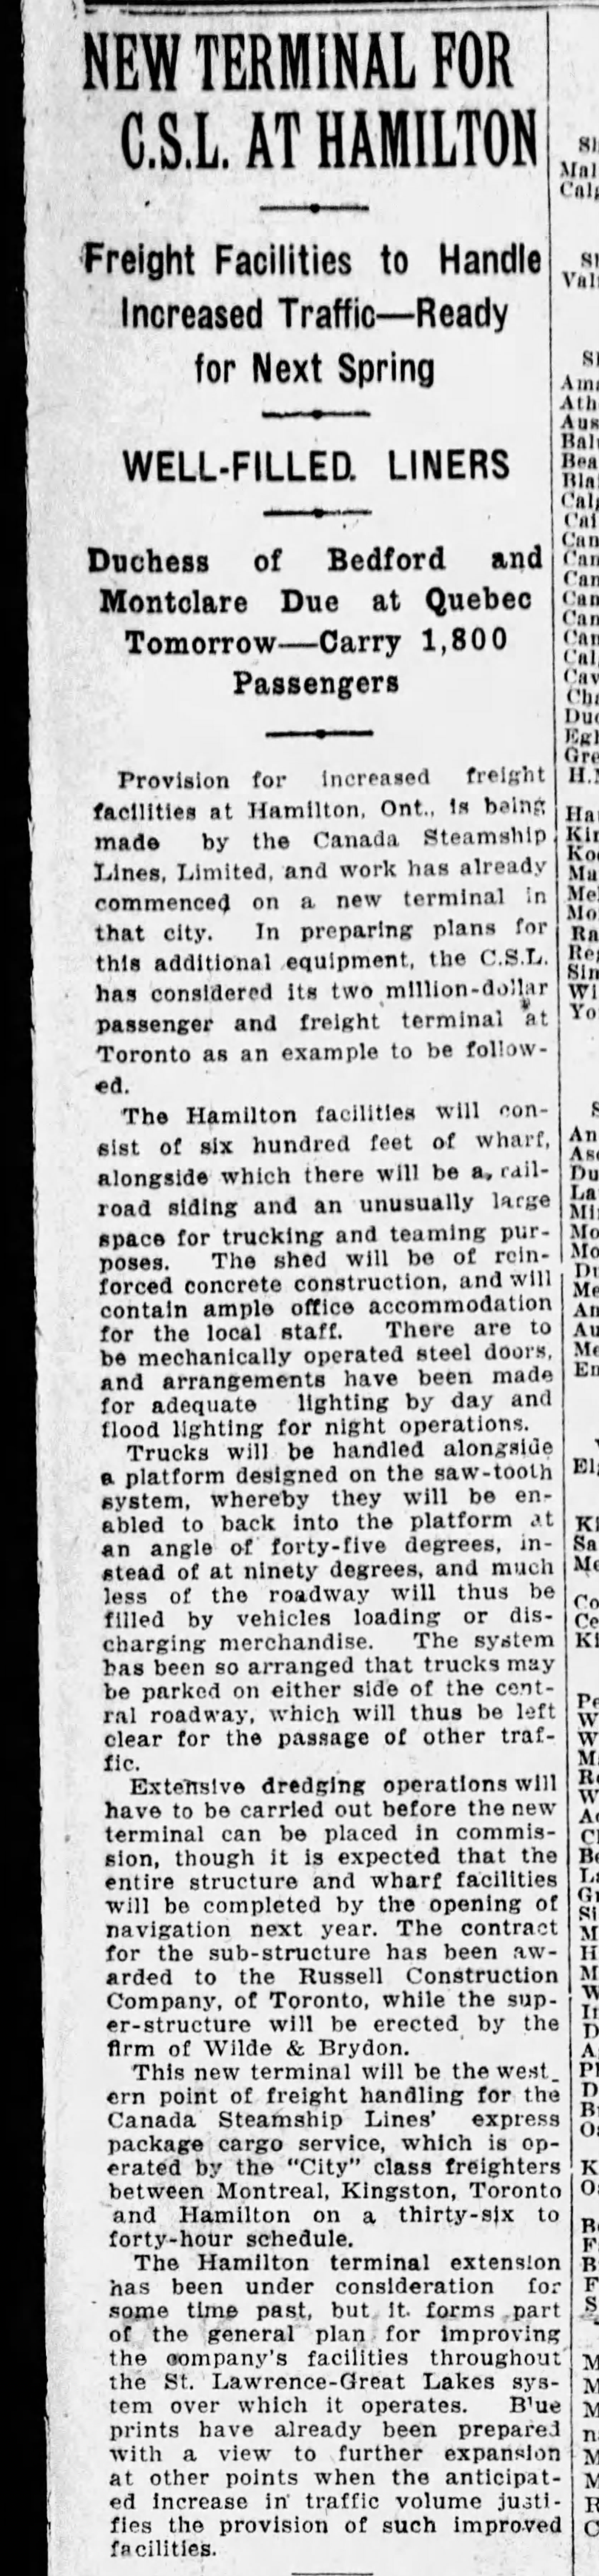 19290821 The Gazette (Mtl) Hamilton Harbour JER